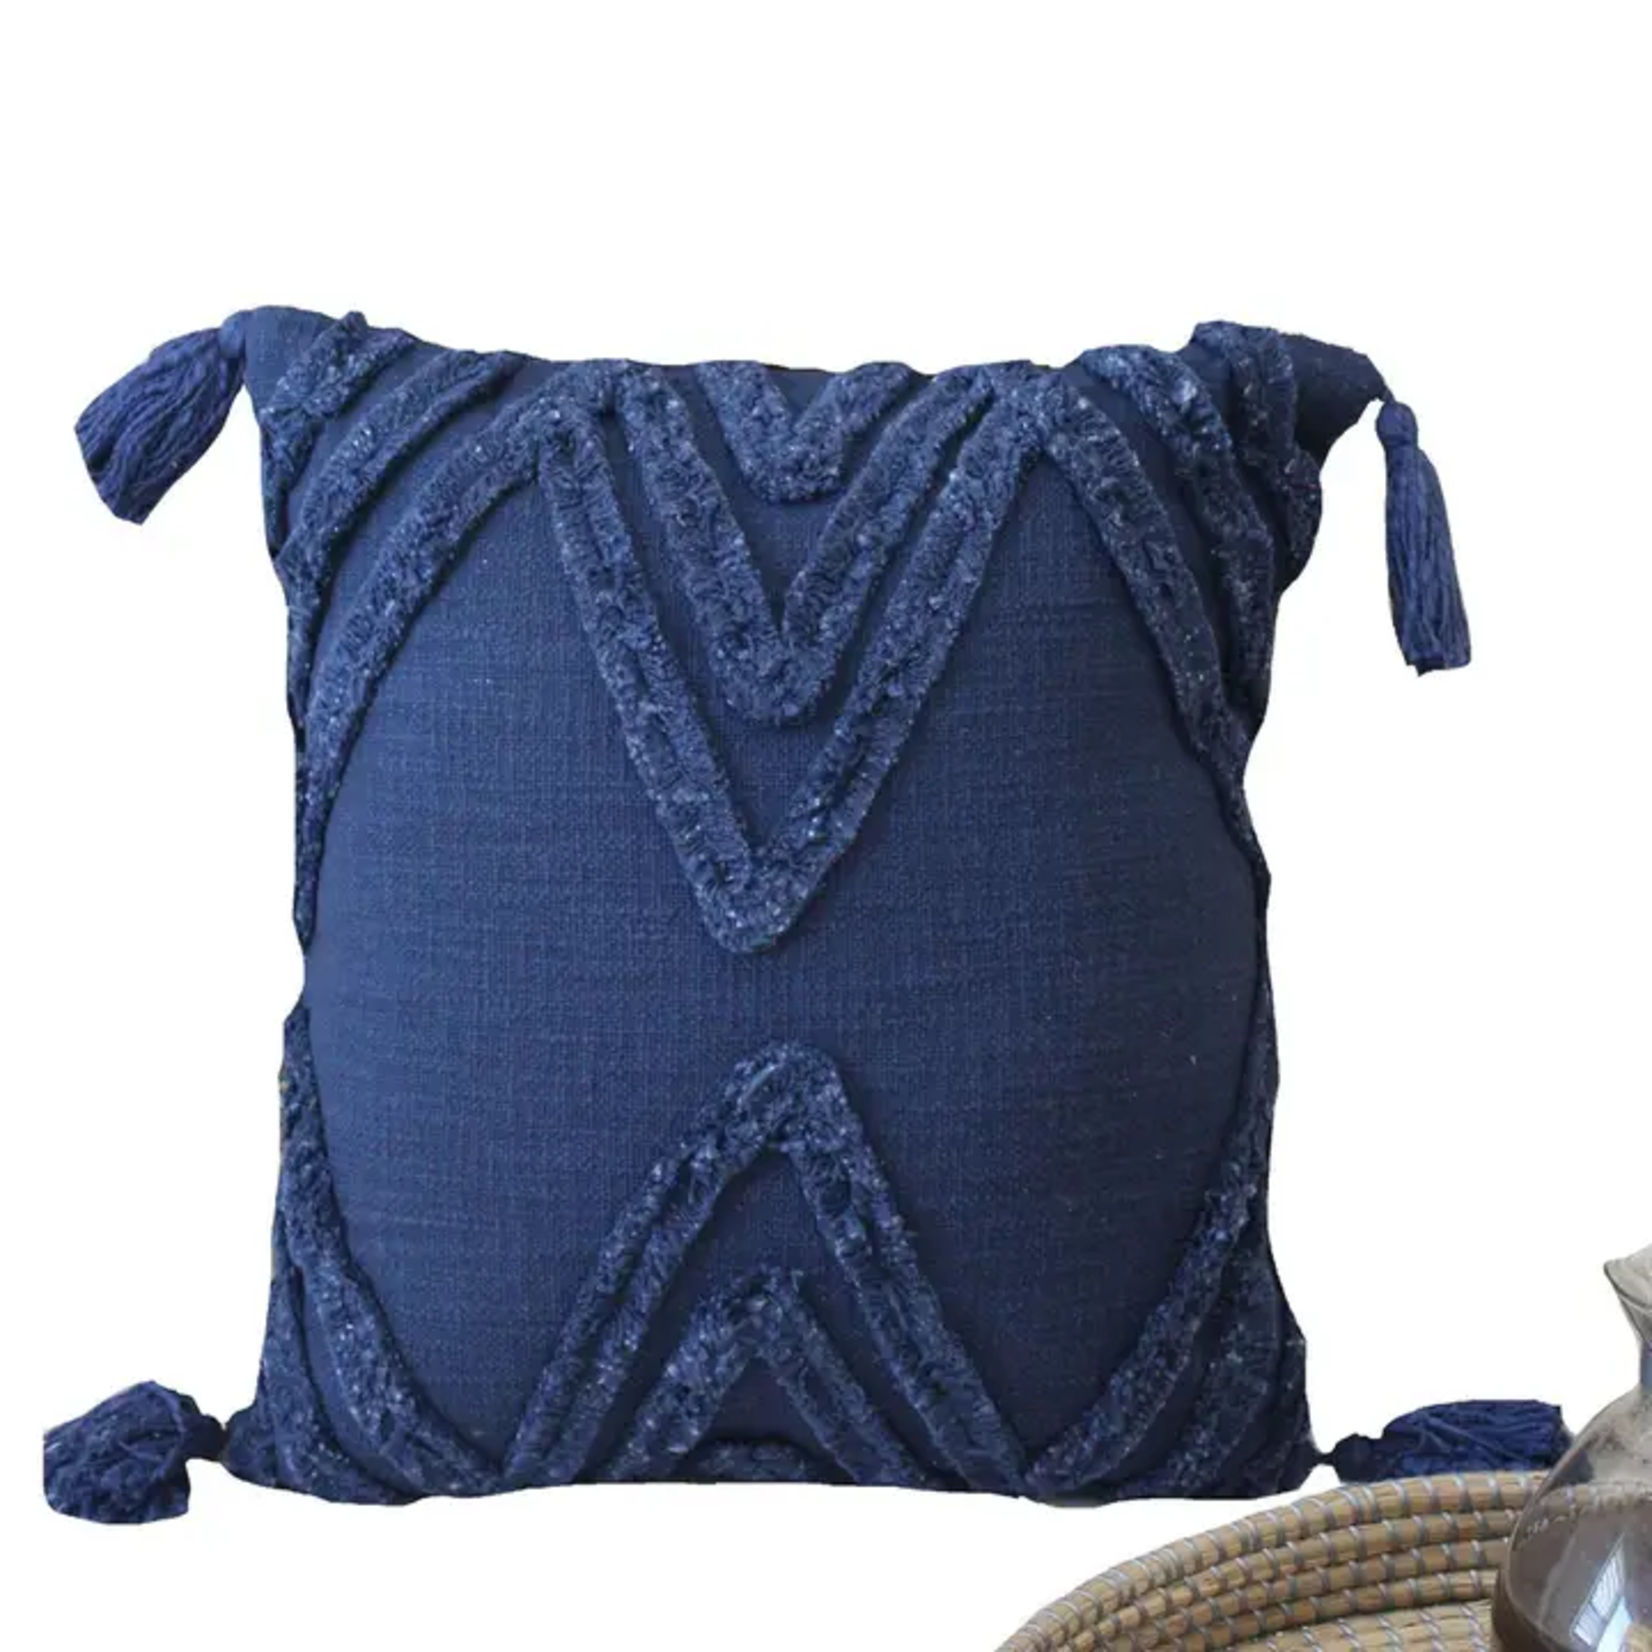 Throw Pillow - Handwoven Navy Blue Textured